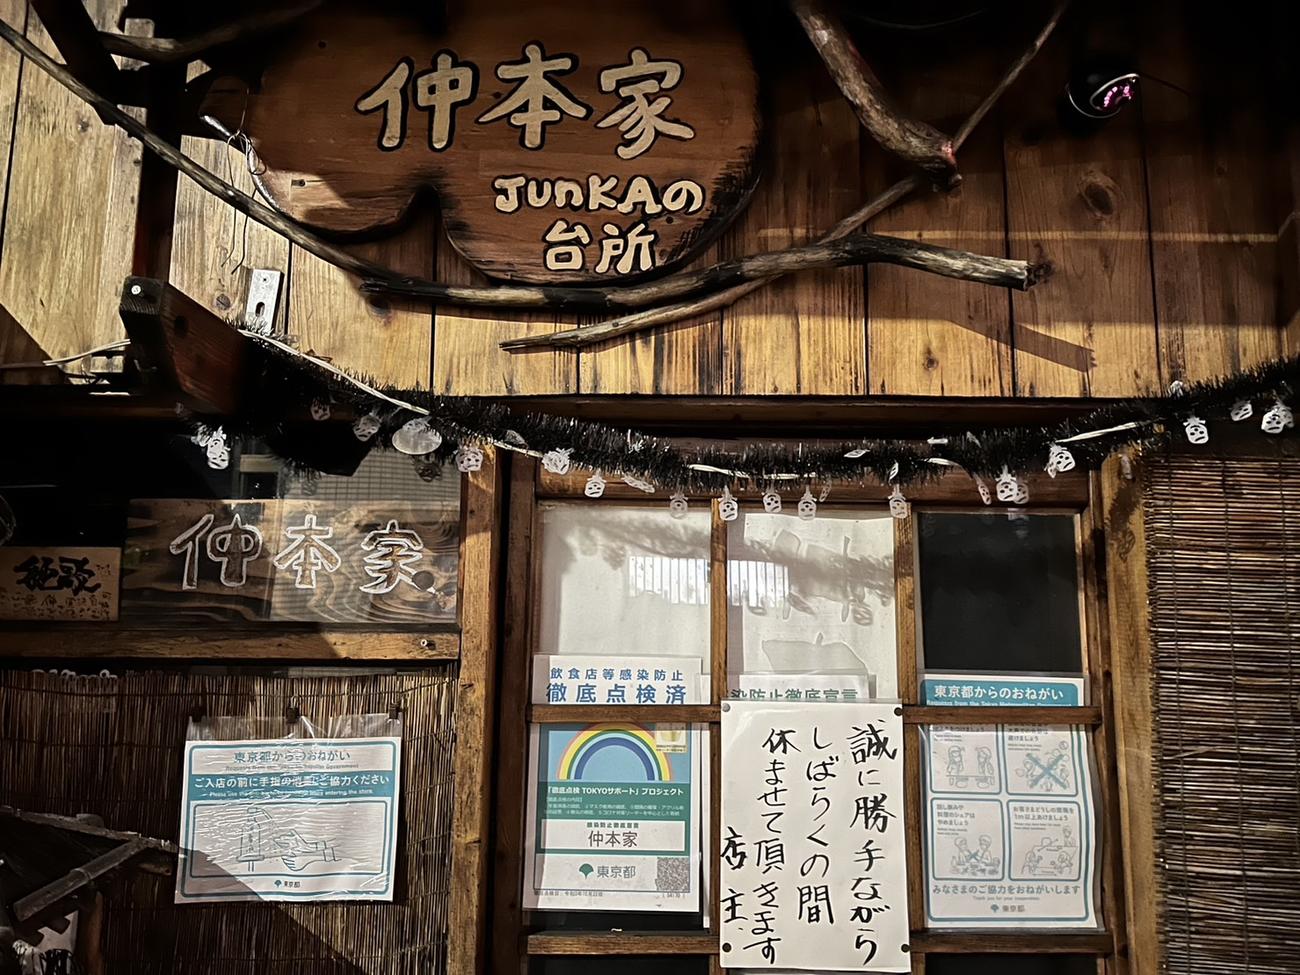 仲本工事さんが営む「仲本家JUNKAの台所」の入り口には休業の知らせが貼られていた＝10月18日